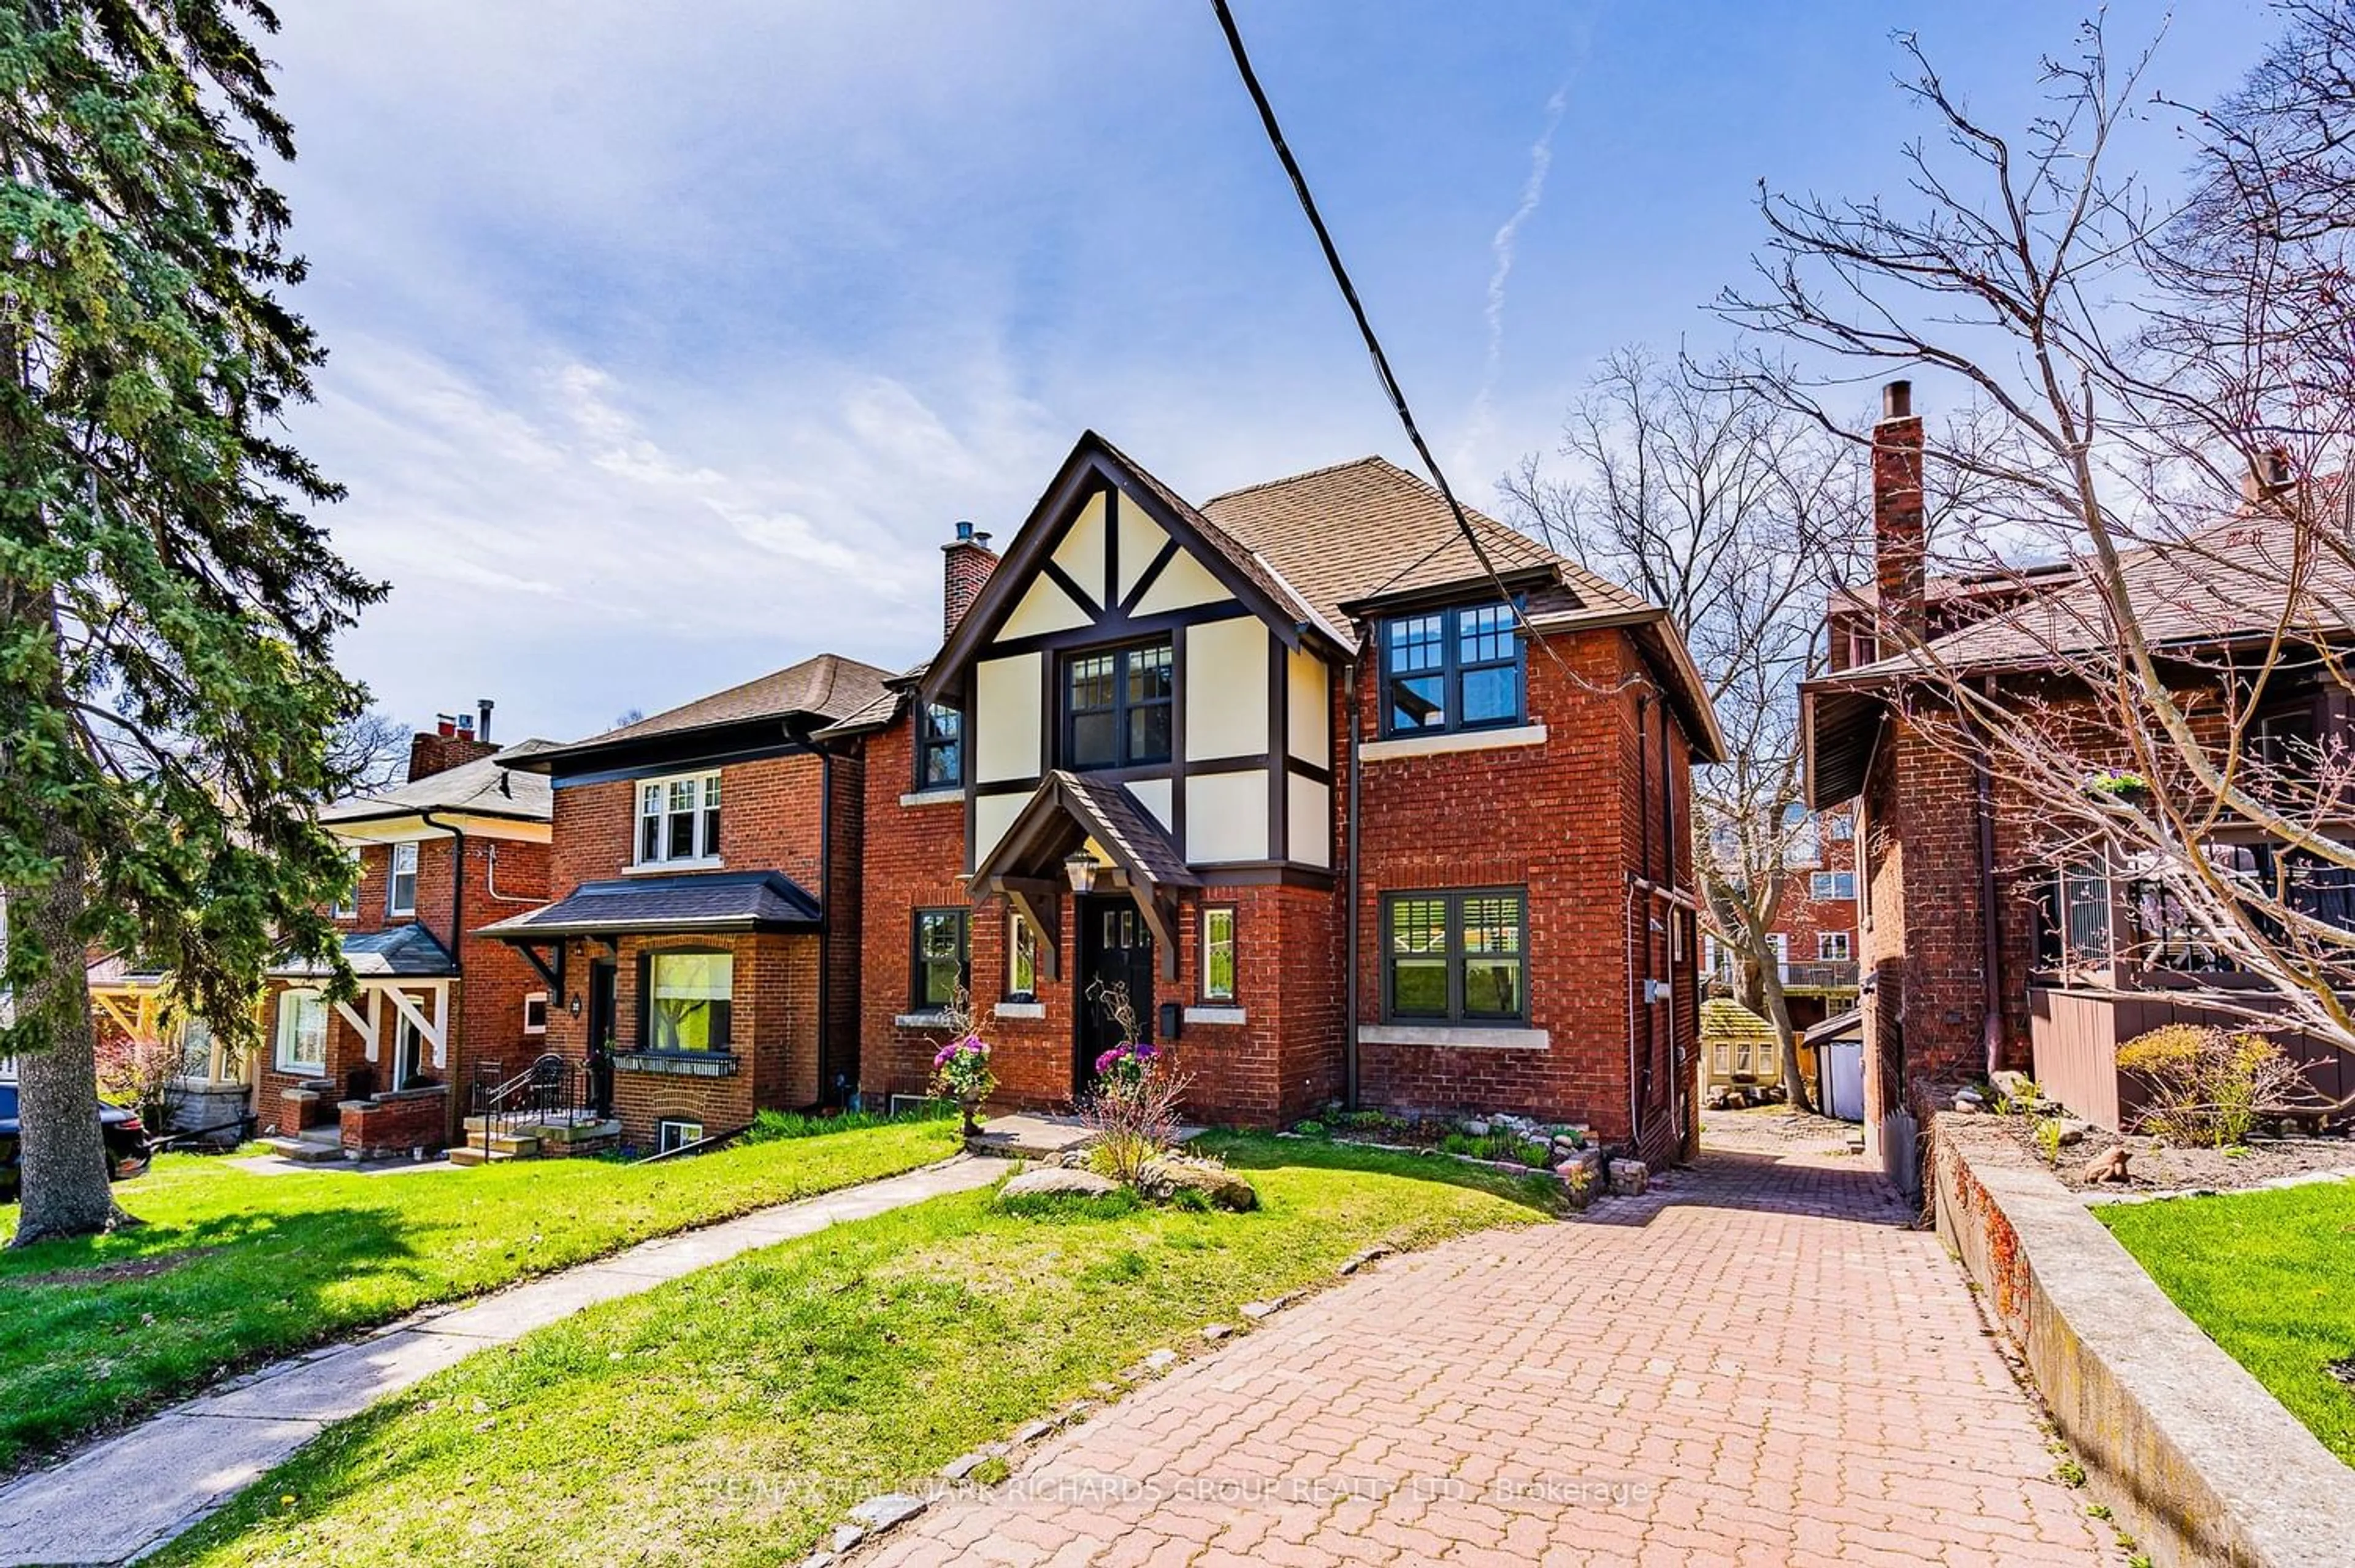 Home with brick exterior material for 34 Nursewood Rd, Toronto Ontario M4E 3R8